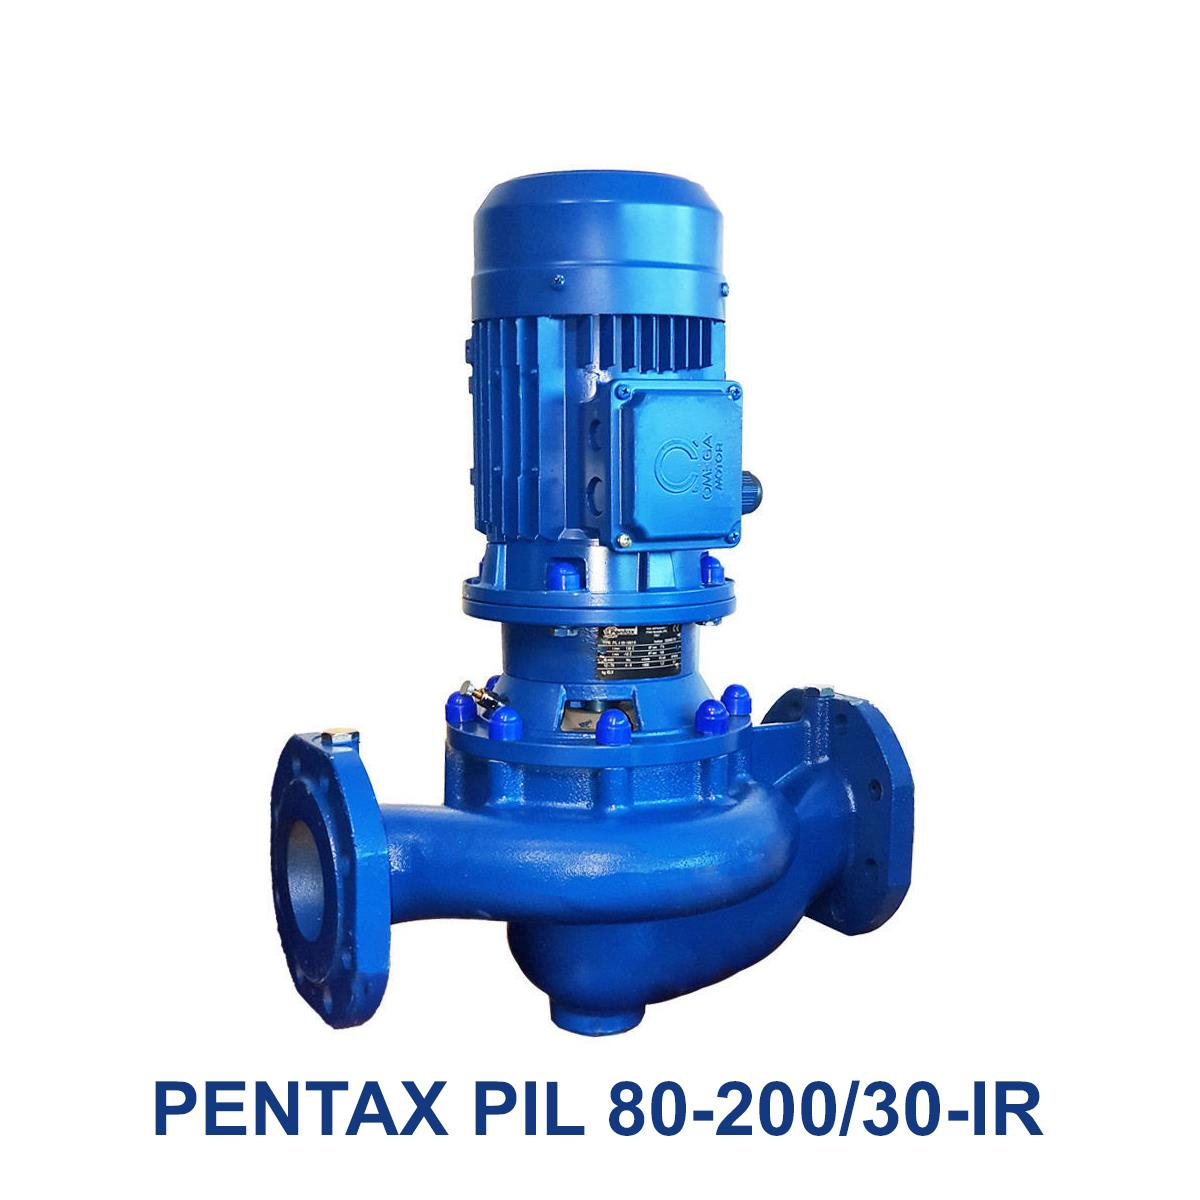 PENTAX-PIL-80-200-30-IR